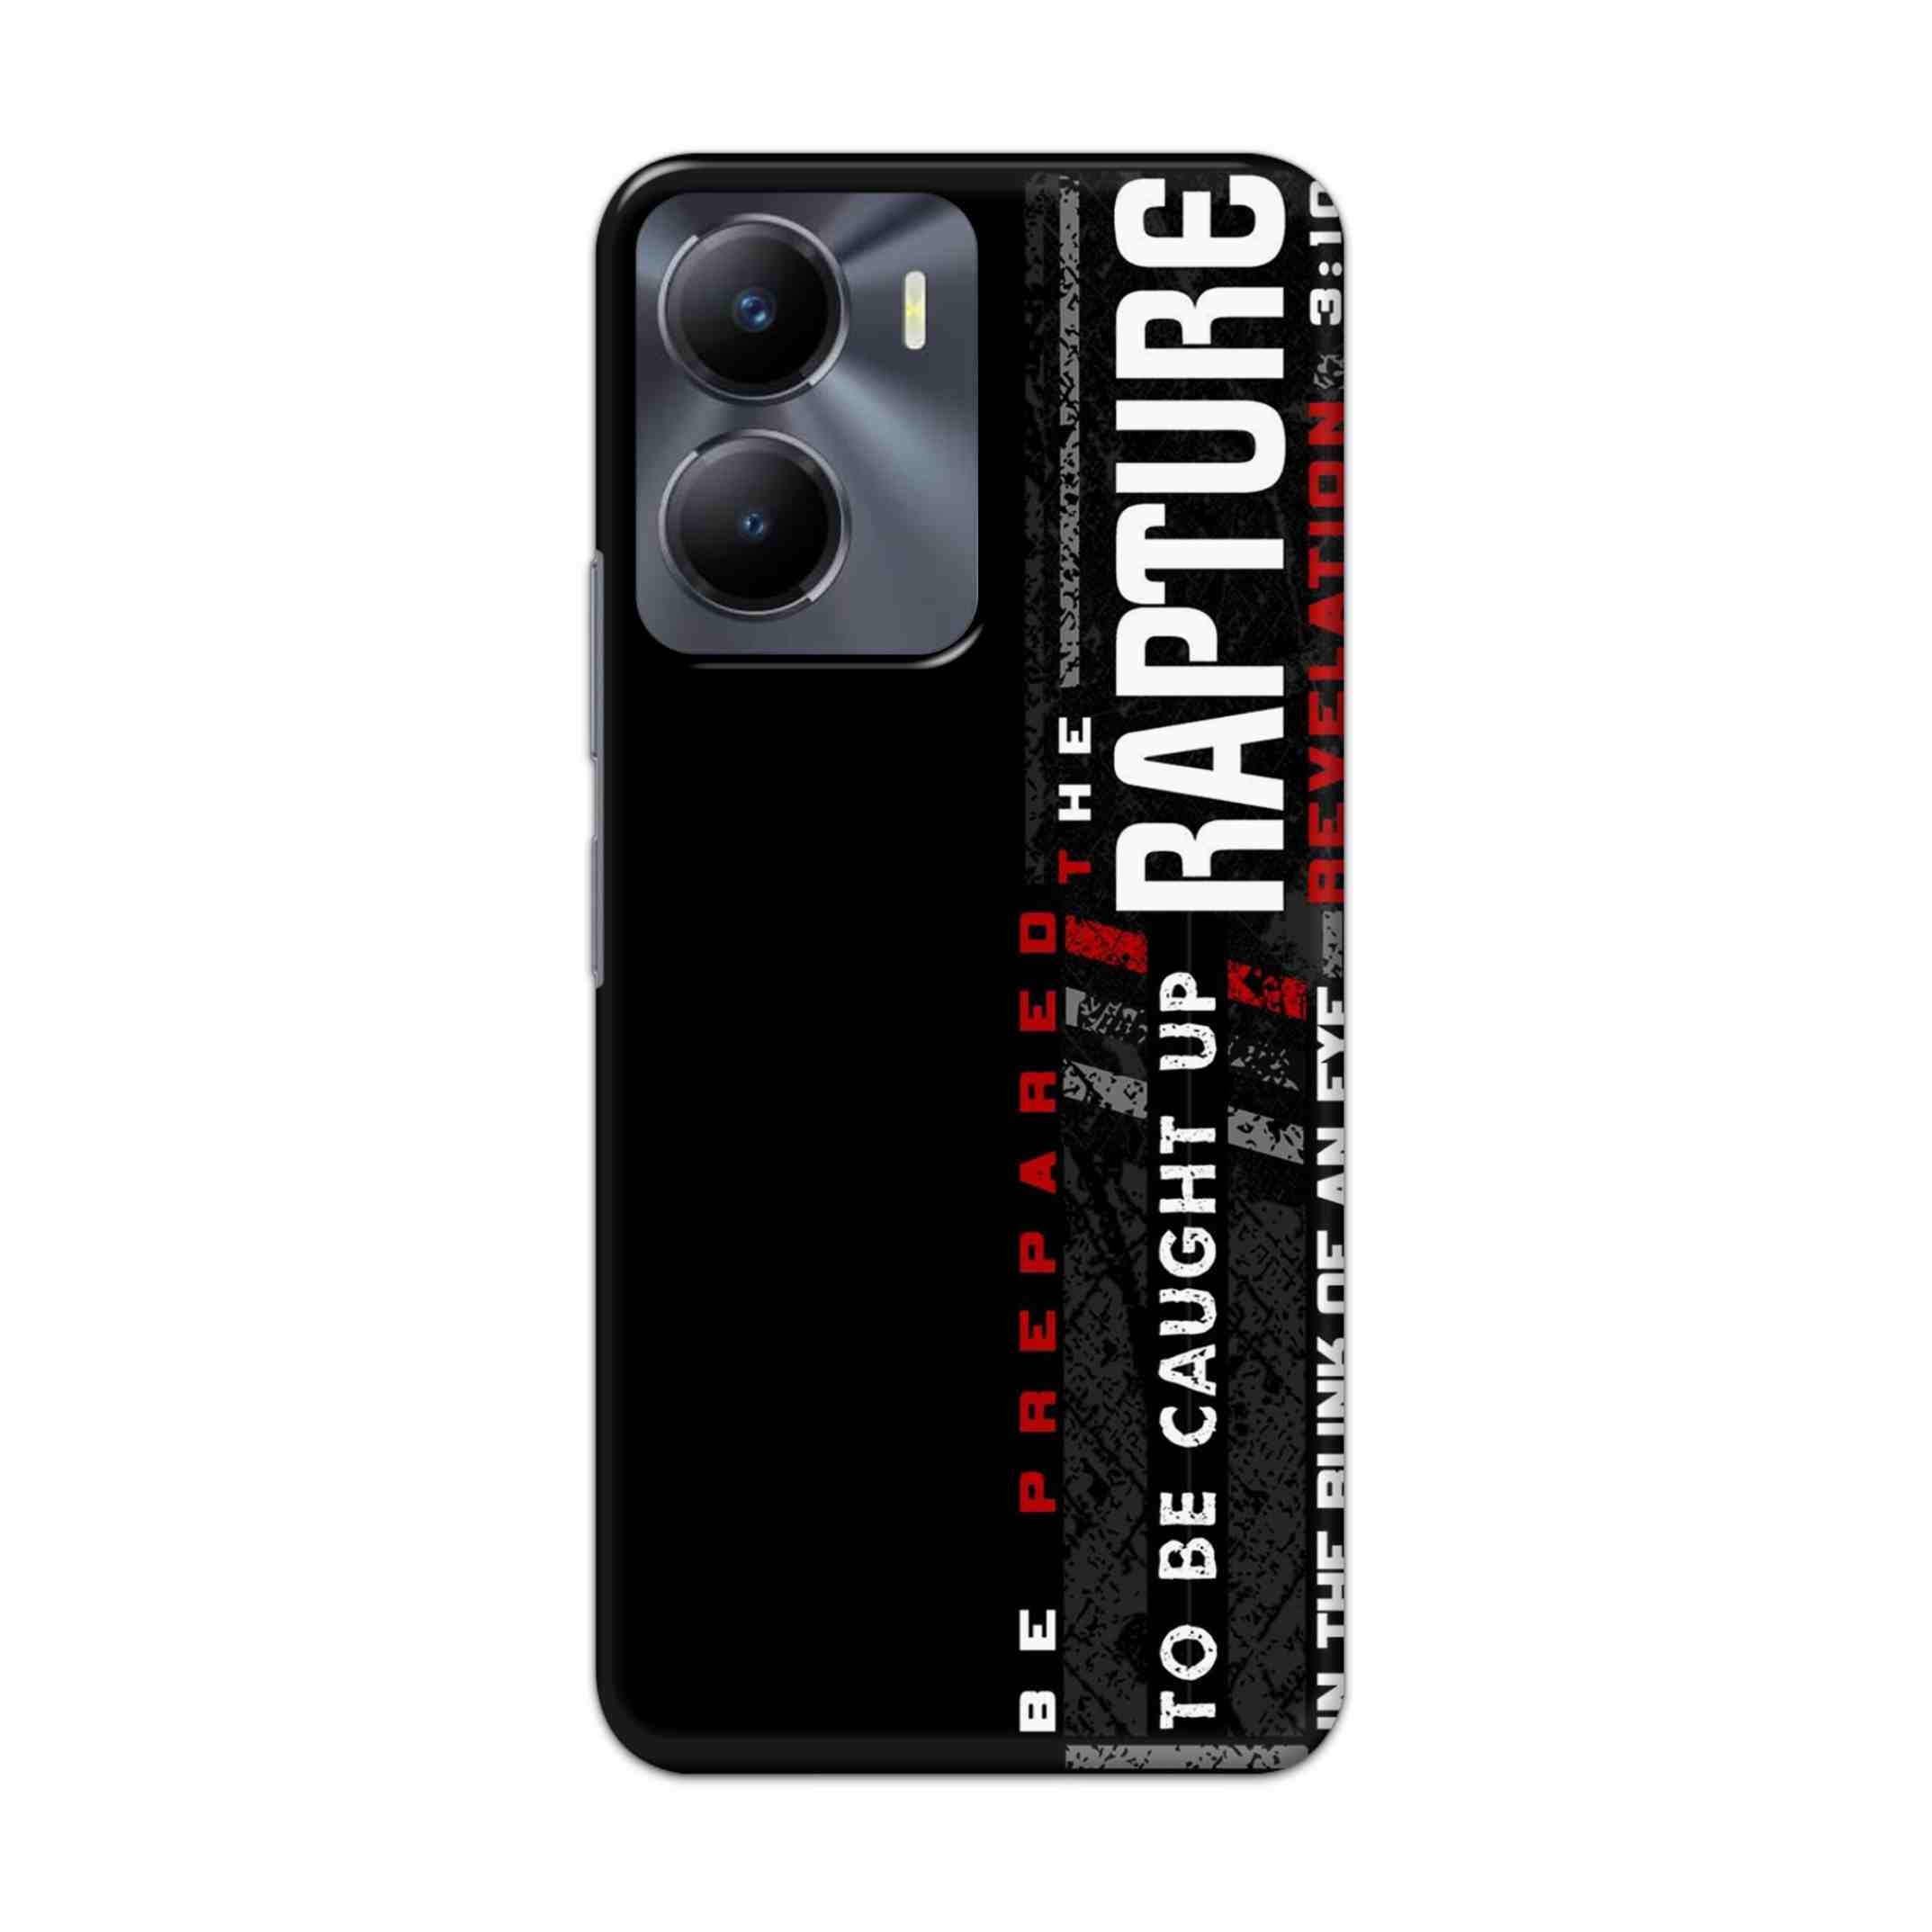 Buy Rapture Hard Back Mobile Phone Case Cover For Vivo Y56 Online